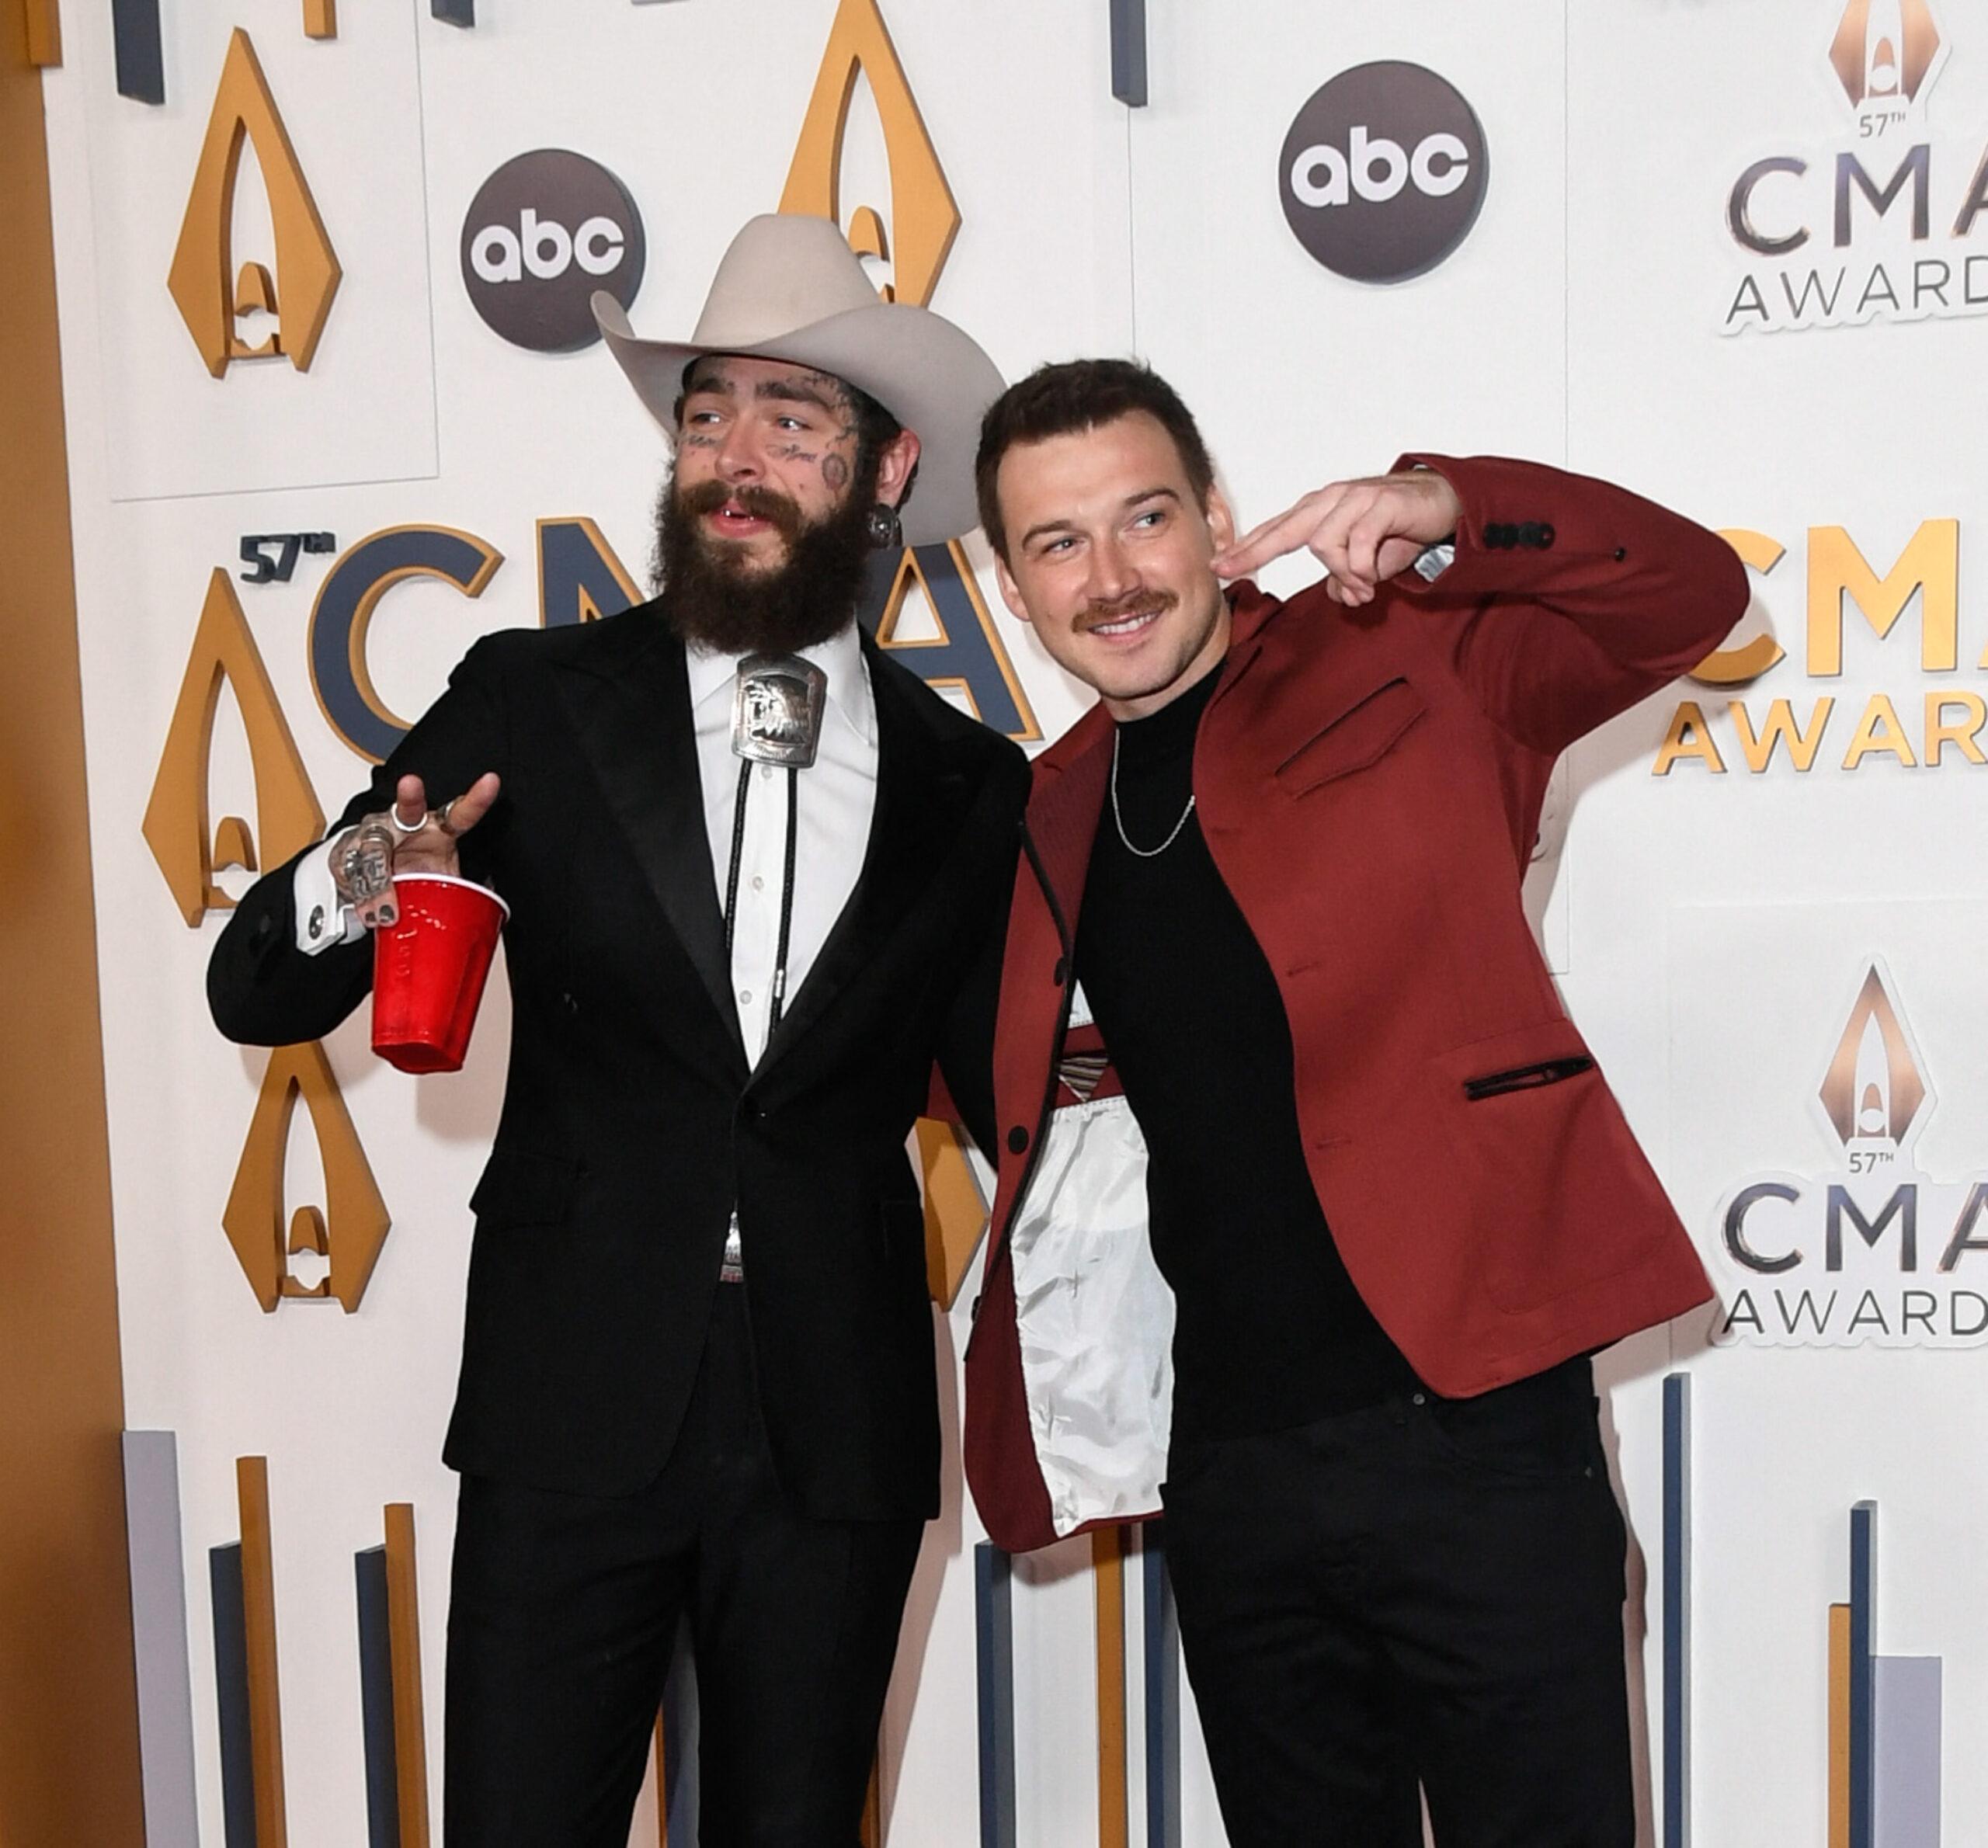 Post Malone and Morgan Wallen at CMA Awards